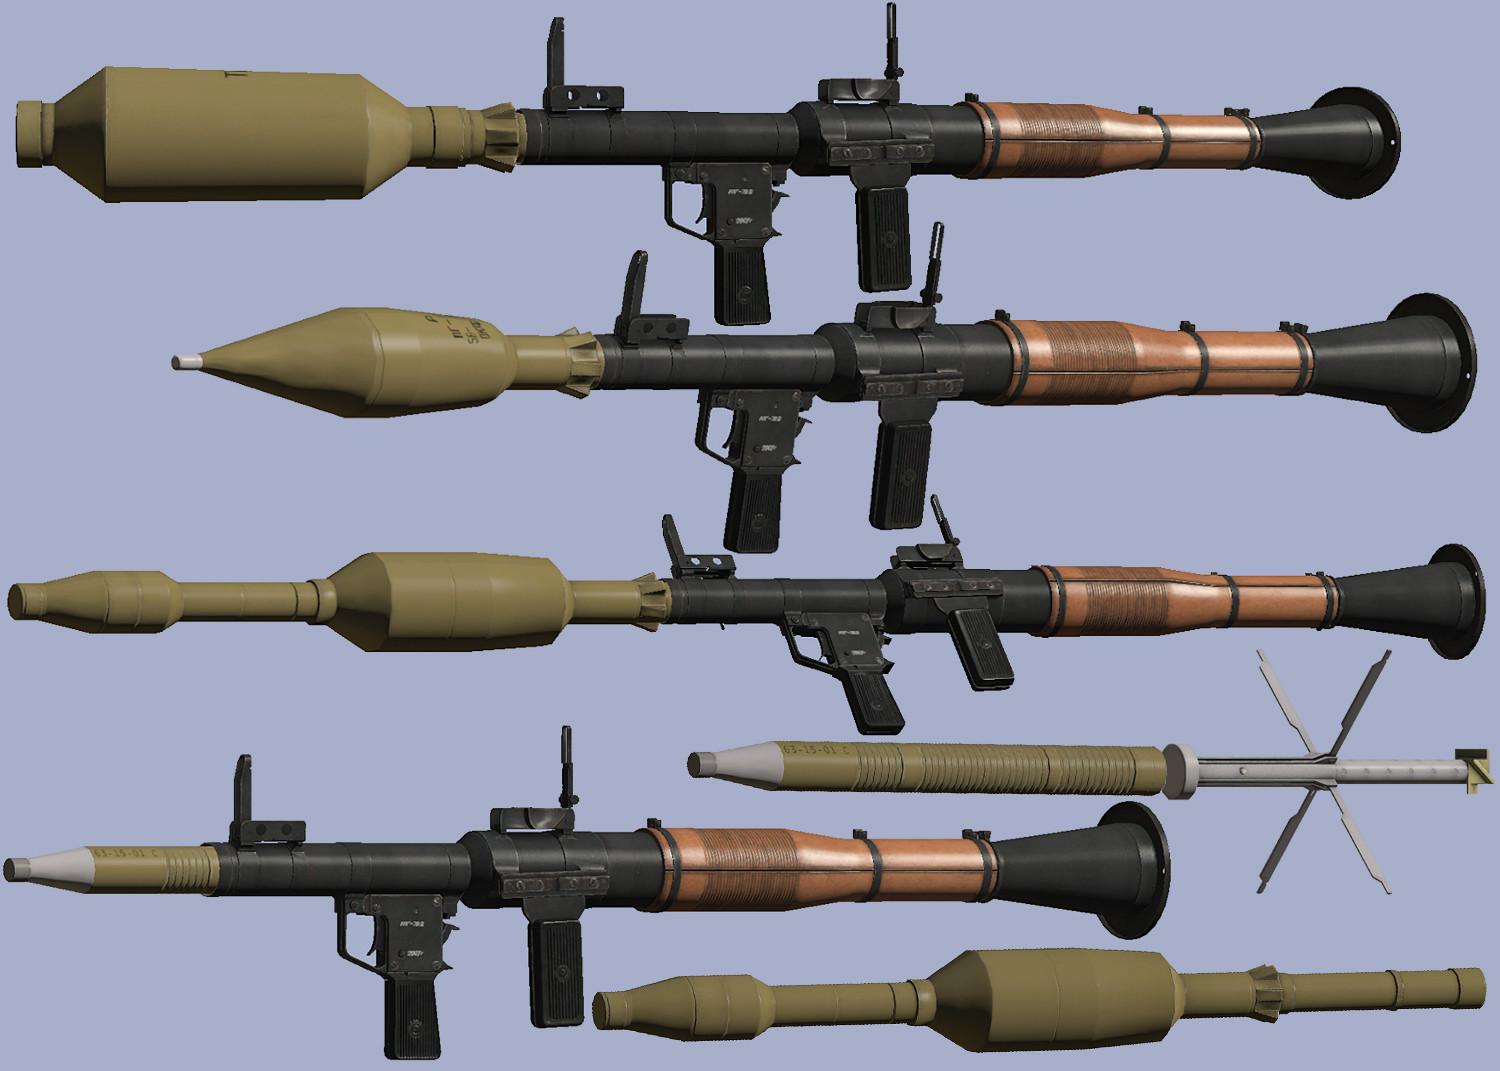 Названия рпг. RPG-7v2. РПГ-7 противотанковая оборона. Ручной противотанковый гранатомет РПГ-7. РПГ 2 И РПГ 7.